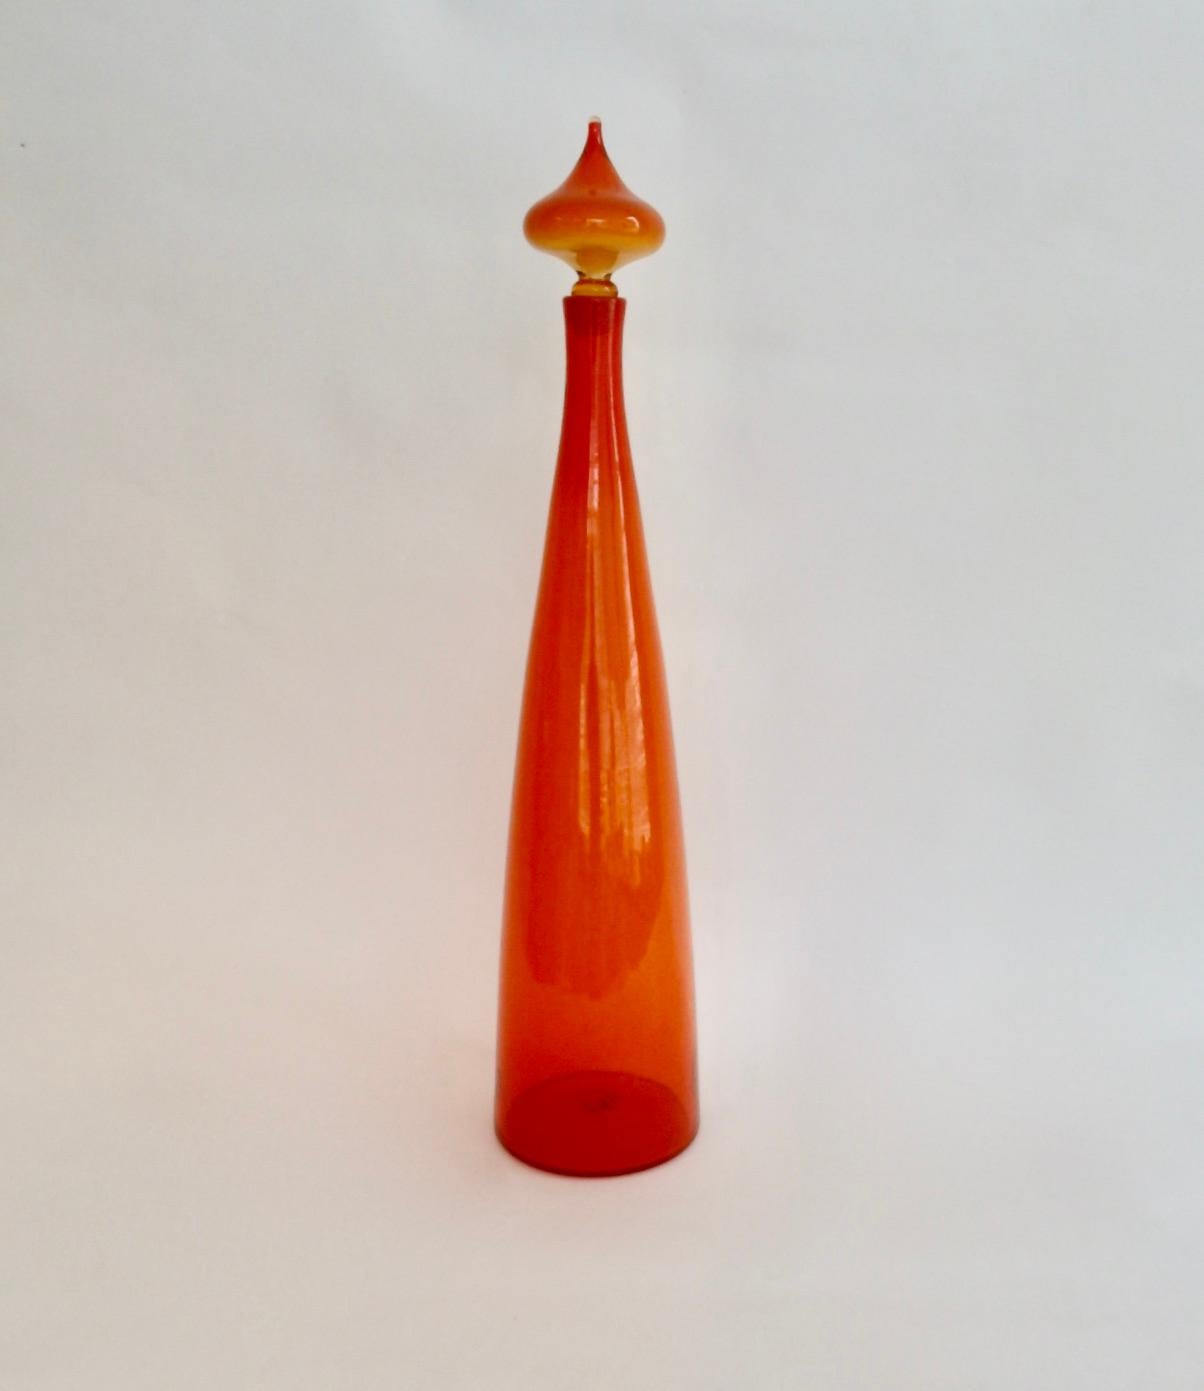 Tall Blenko bottle vase with stopper.